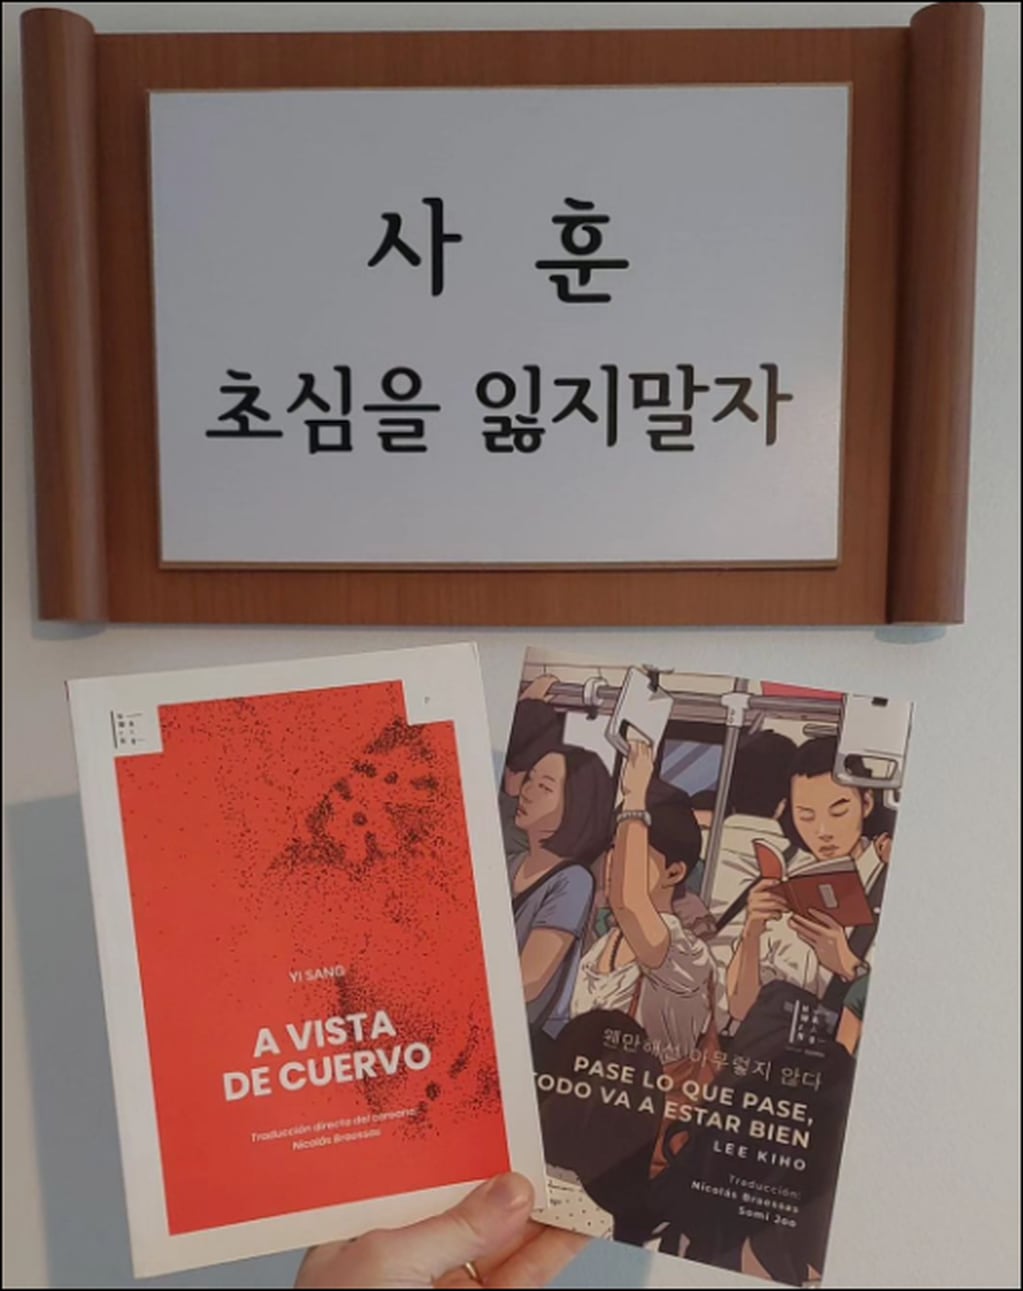  "A vista de cuervo" de Yi Sang fue el primer libro que editaron y "Pase lo que pase, todo va a estar bien" de Lee Kiho, el más reciente.